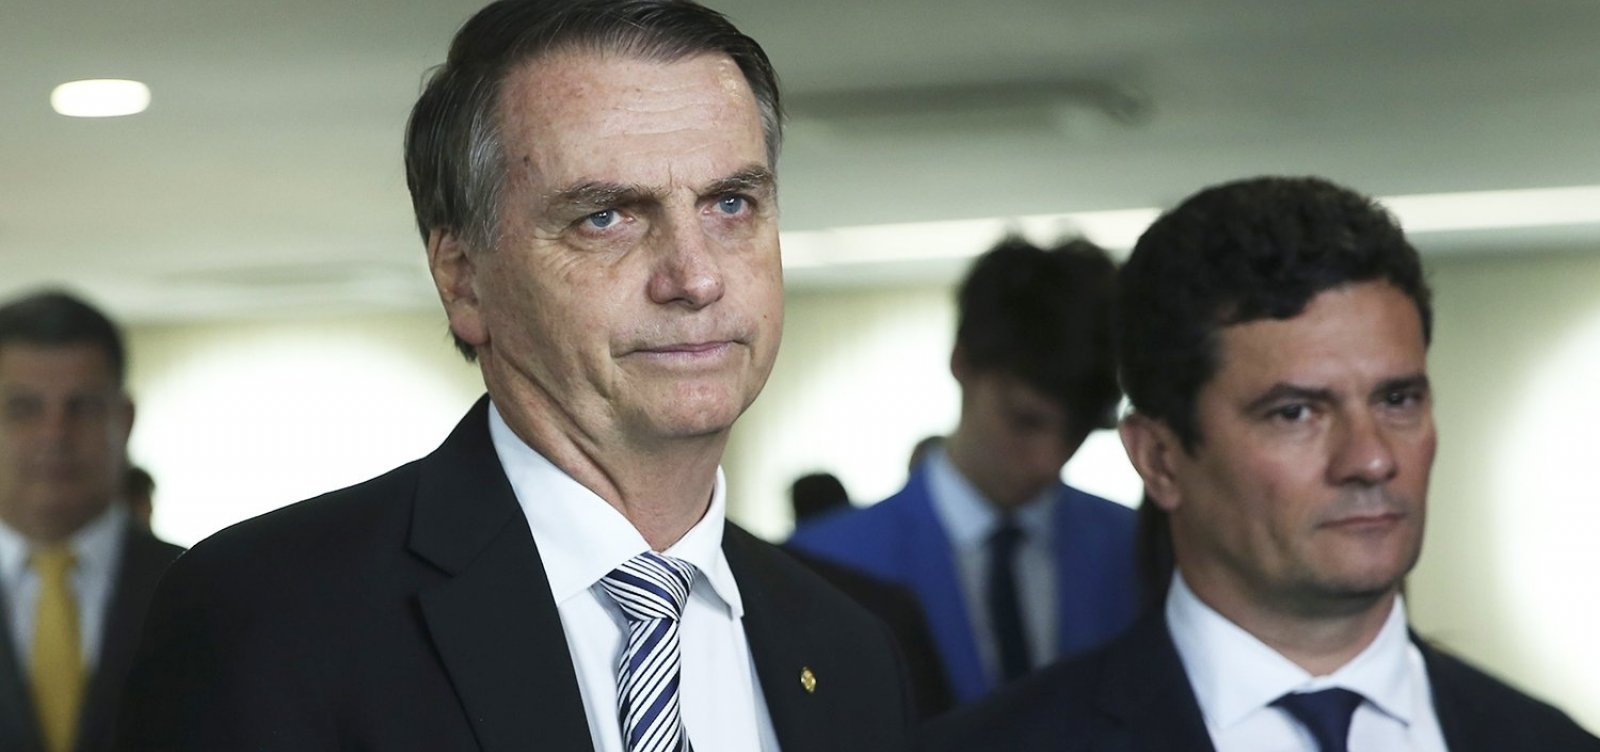 'Moro, Valeixo sai esta semana', diz Bolsonaro em mensagem antes de reunião ministerial